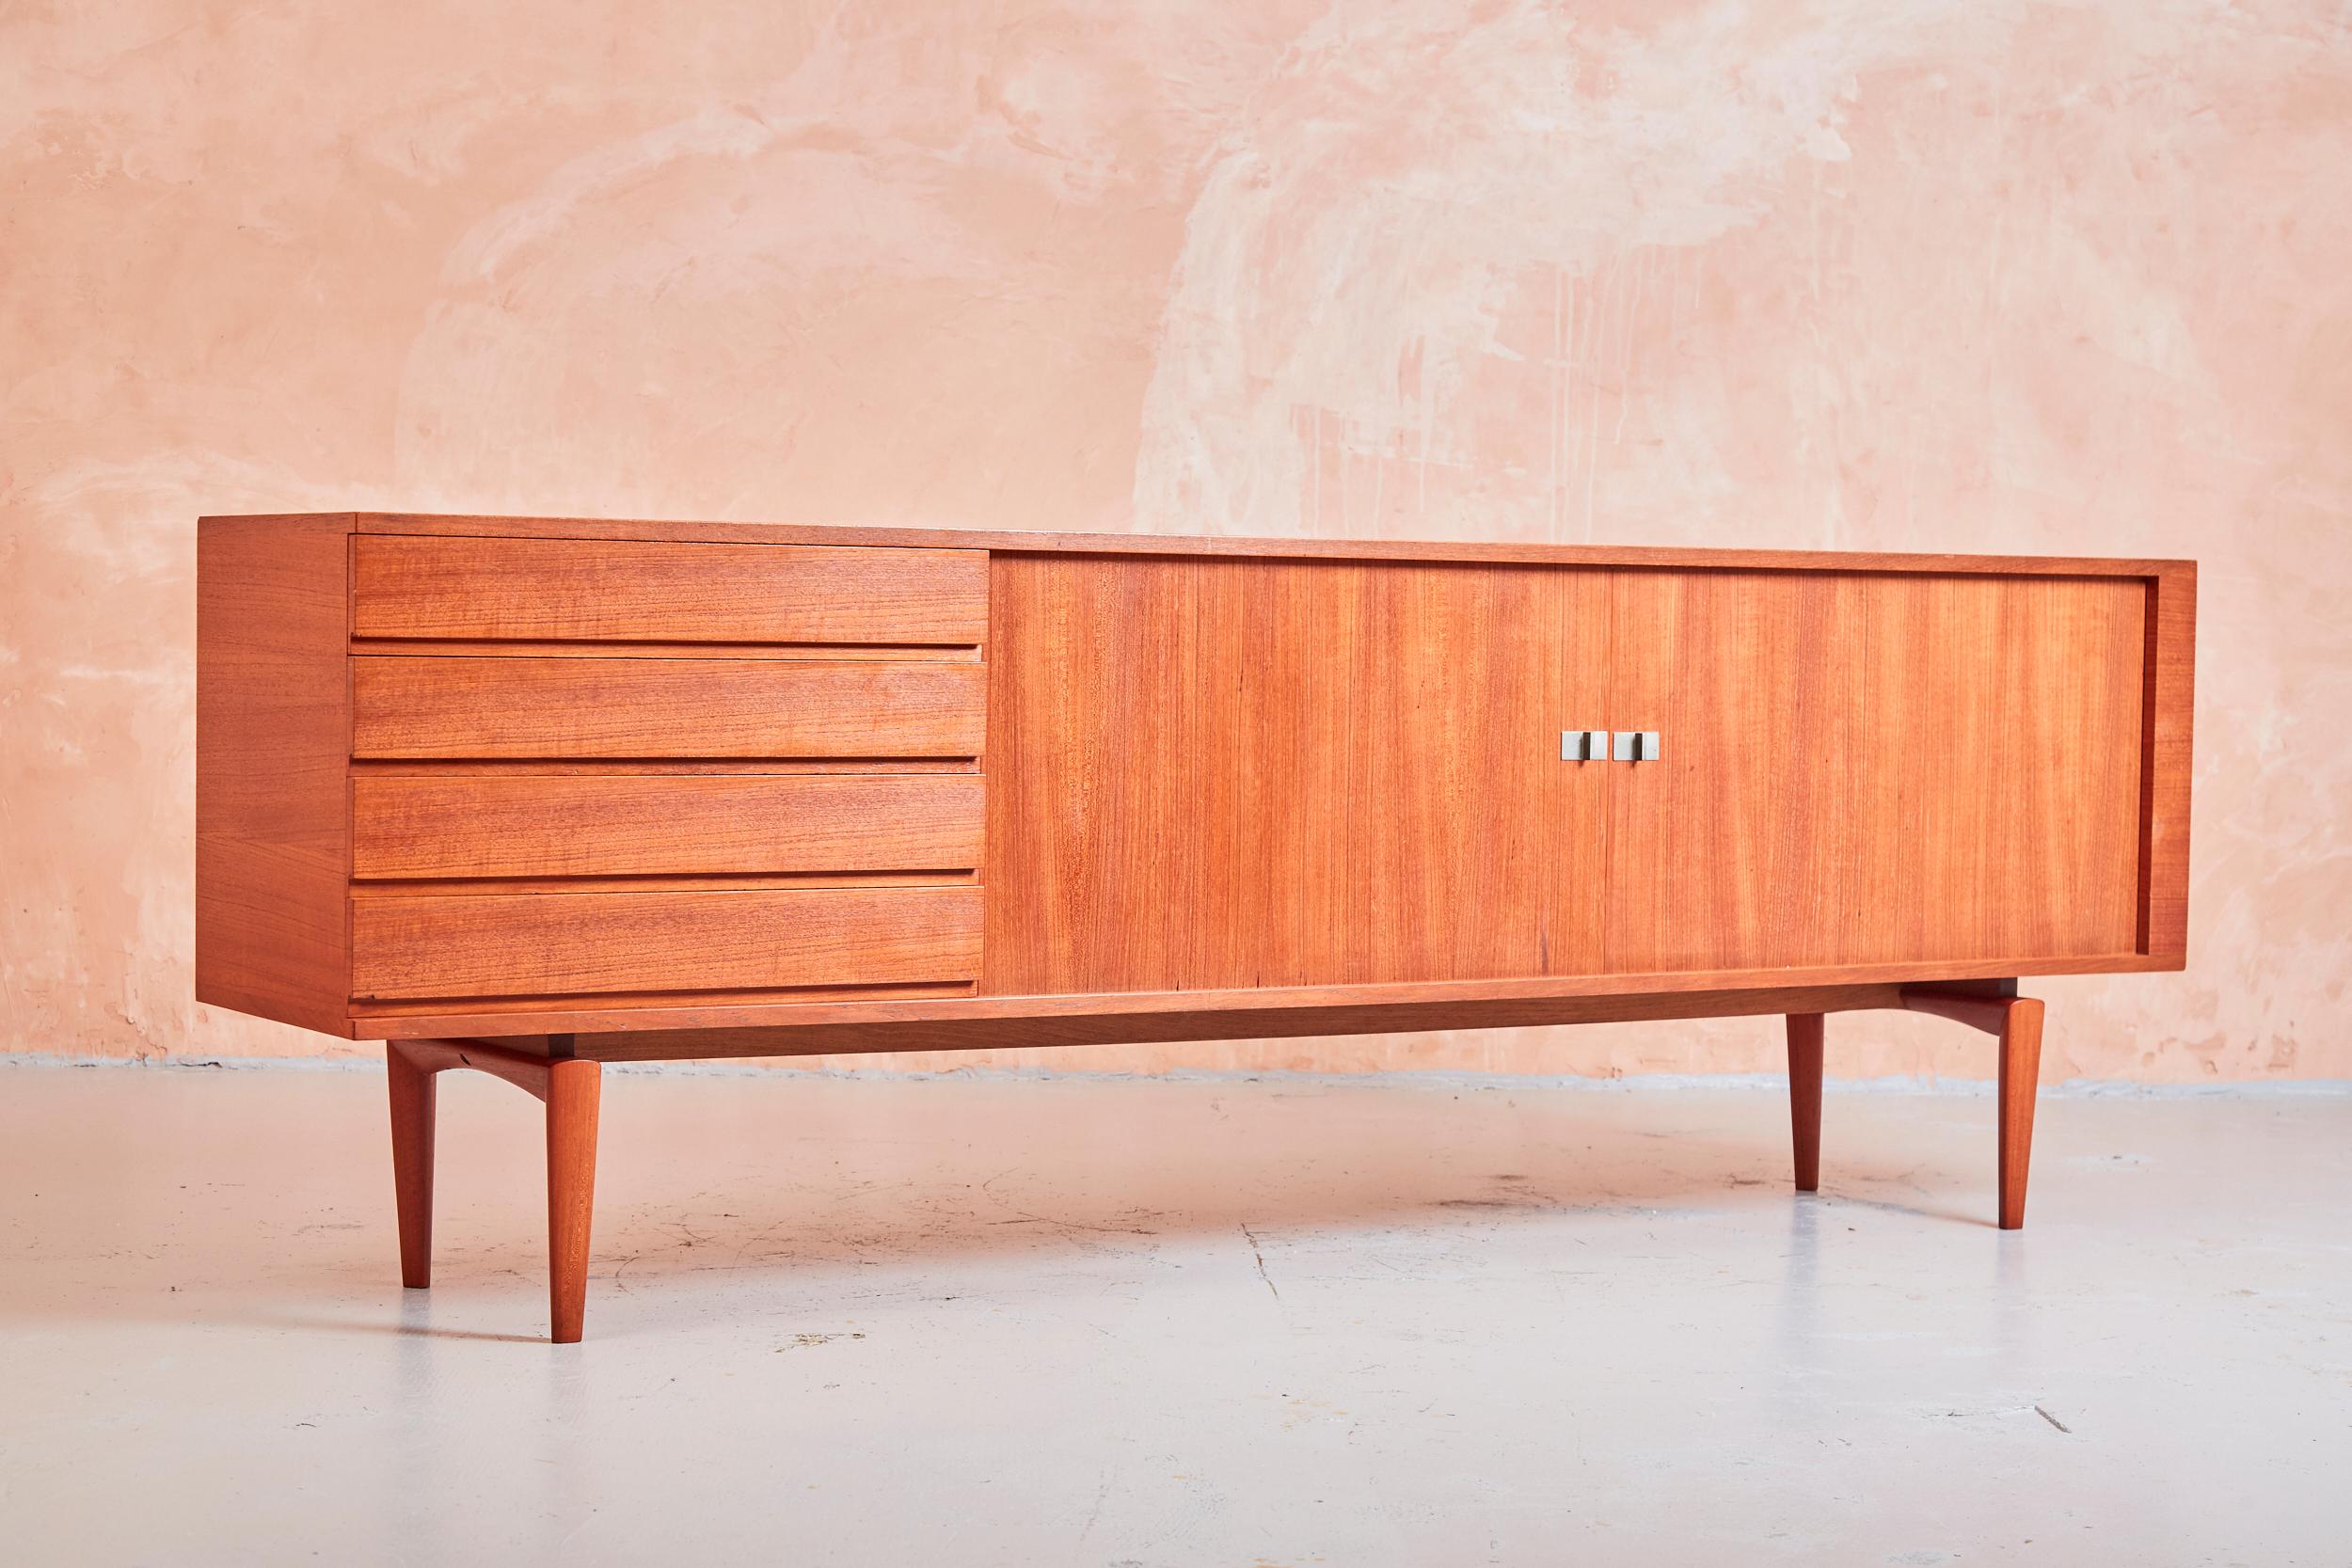 Dieses begehrte Sideboard im Designklassizismus wurde von Henry Walter Klein entworfen und in den 1960er Jahren von Bramin hergestellt.

Die Anrichte mit vier Schubladen befindet sich neben zwei Schiebetüren aus Tambourholz und zeichnet sich durch